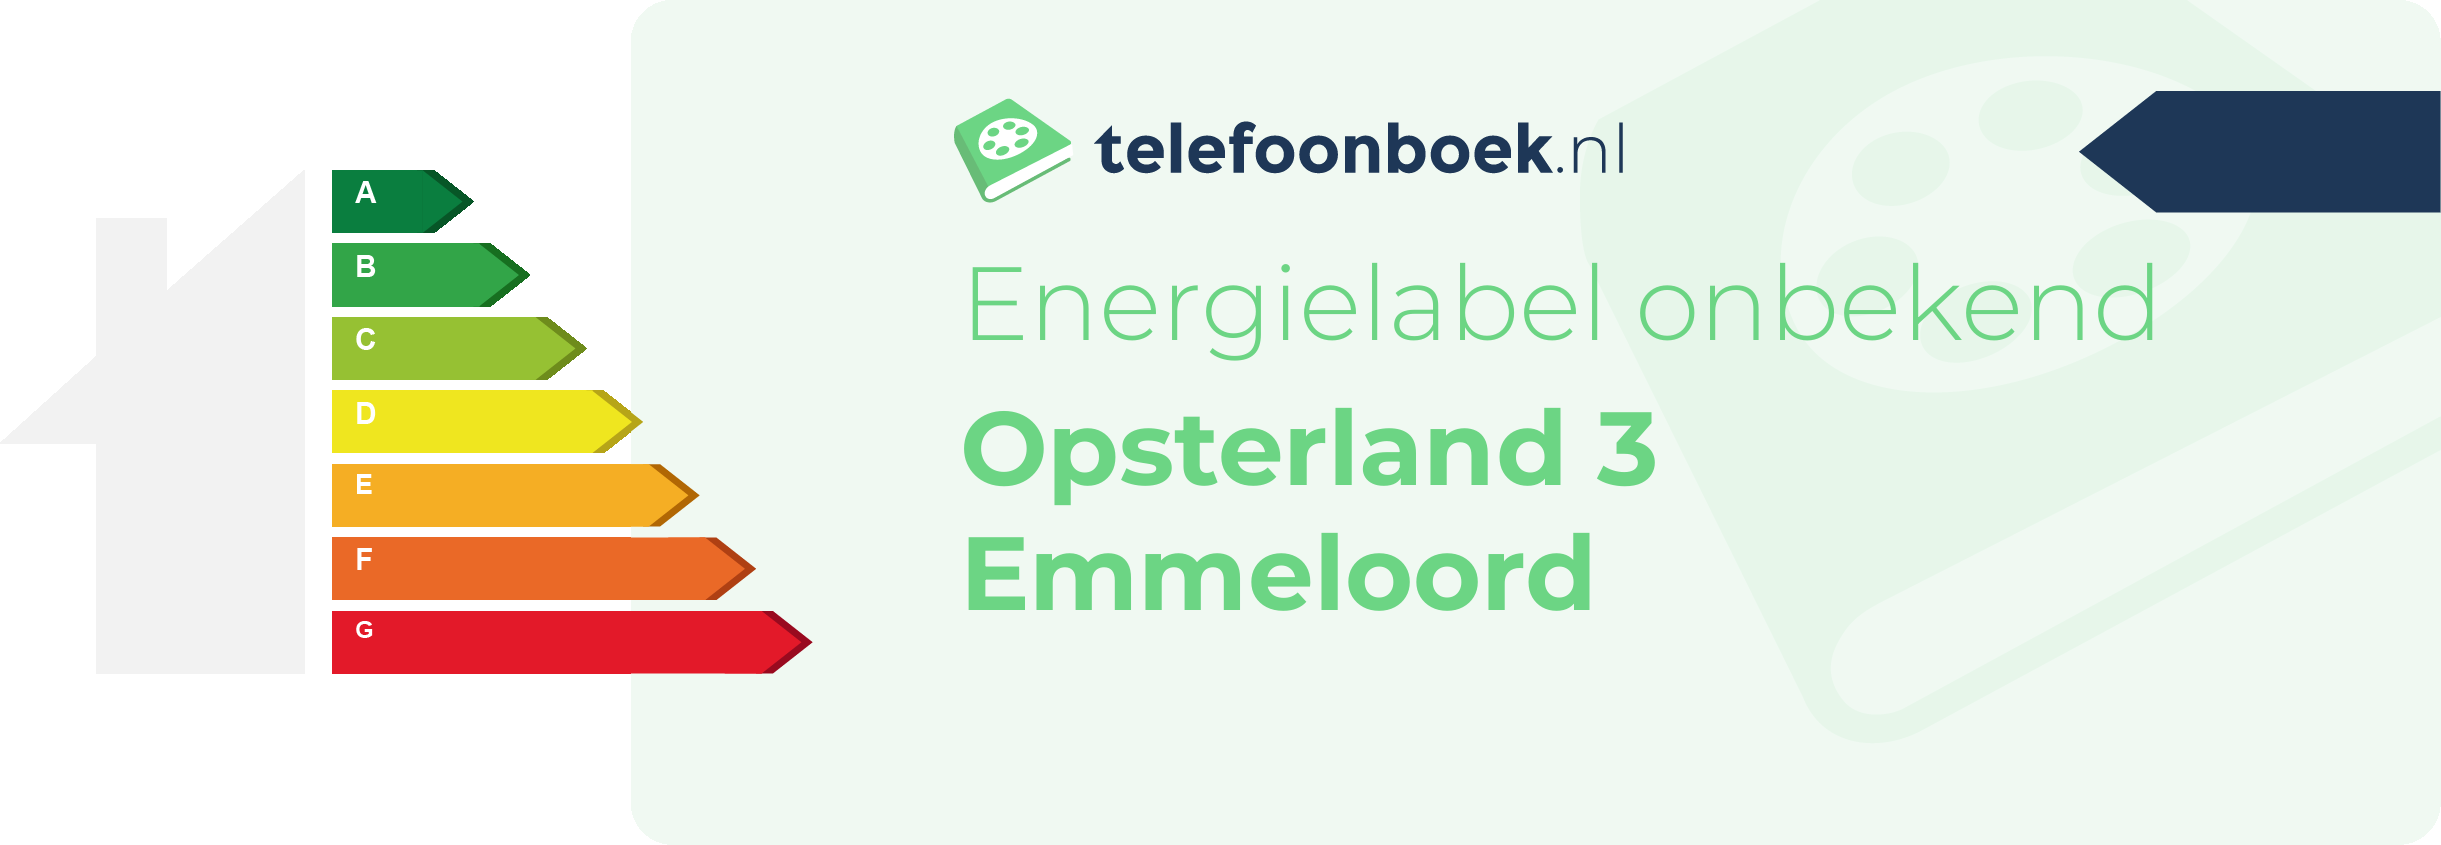 Energielabel Opsterland 3 Emmeloord